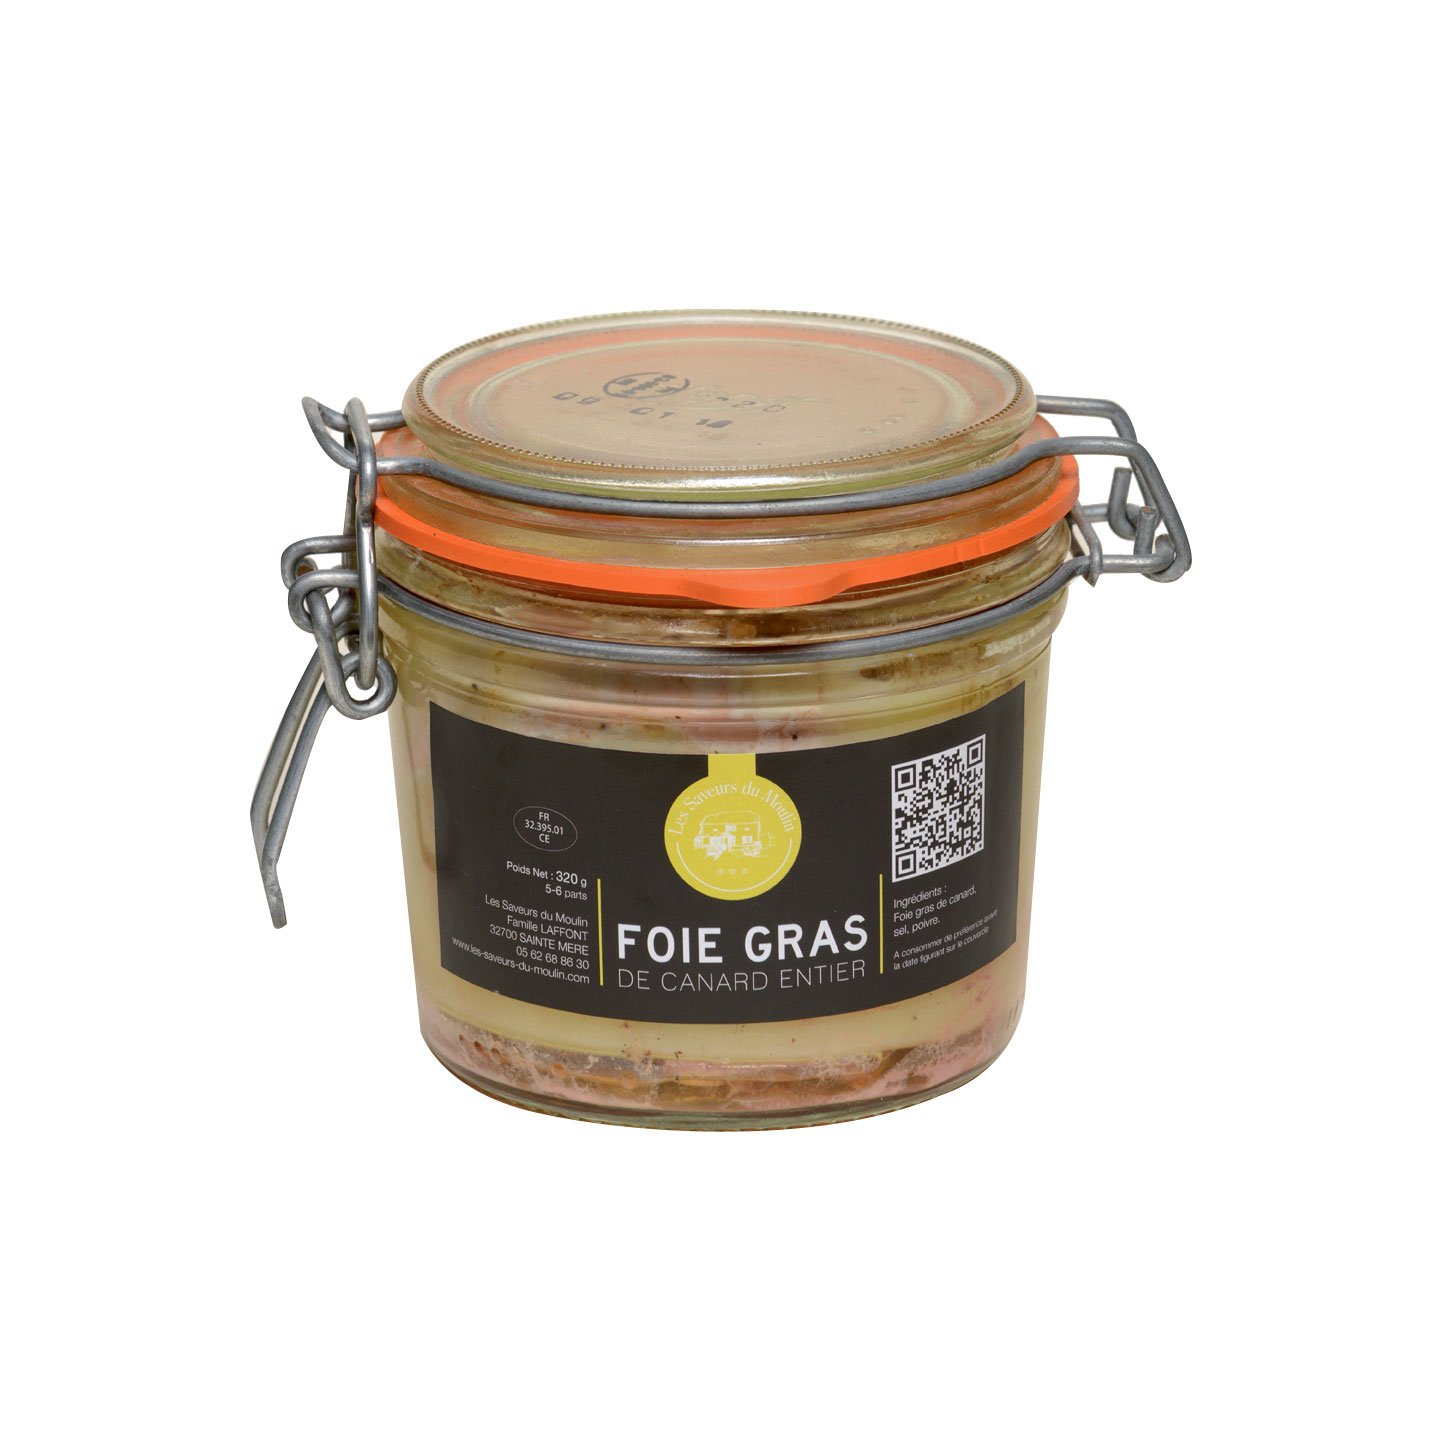 Lyre à foie gras - coupe foie gras